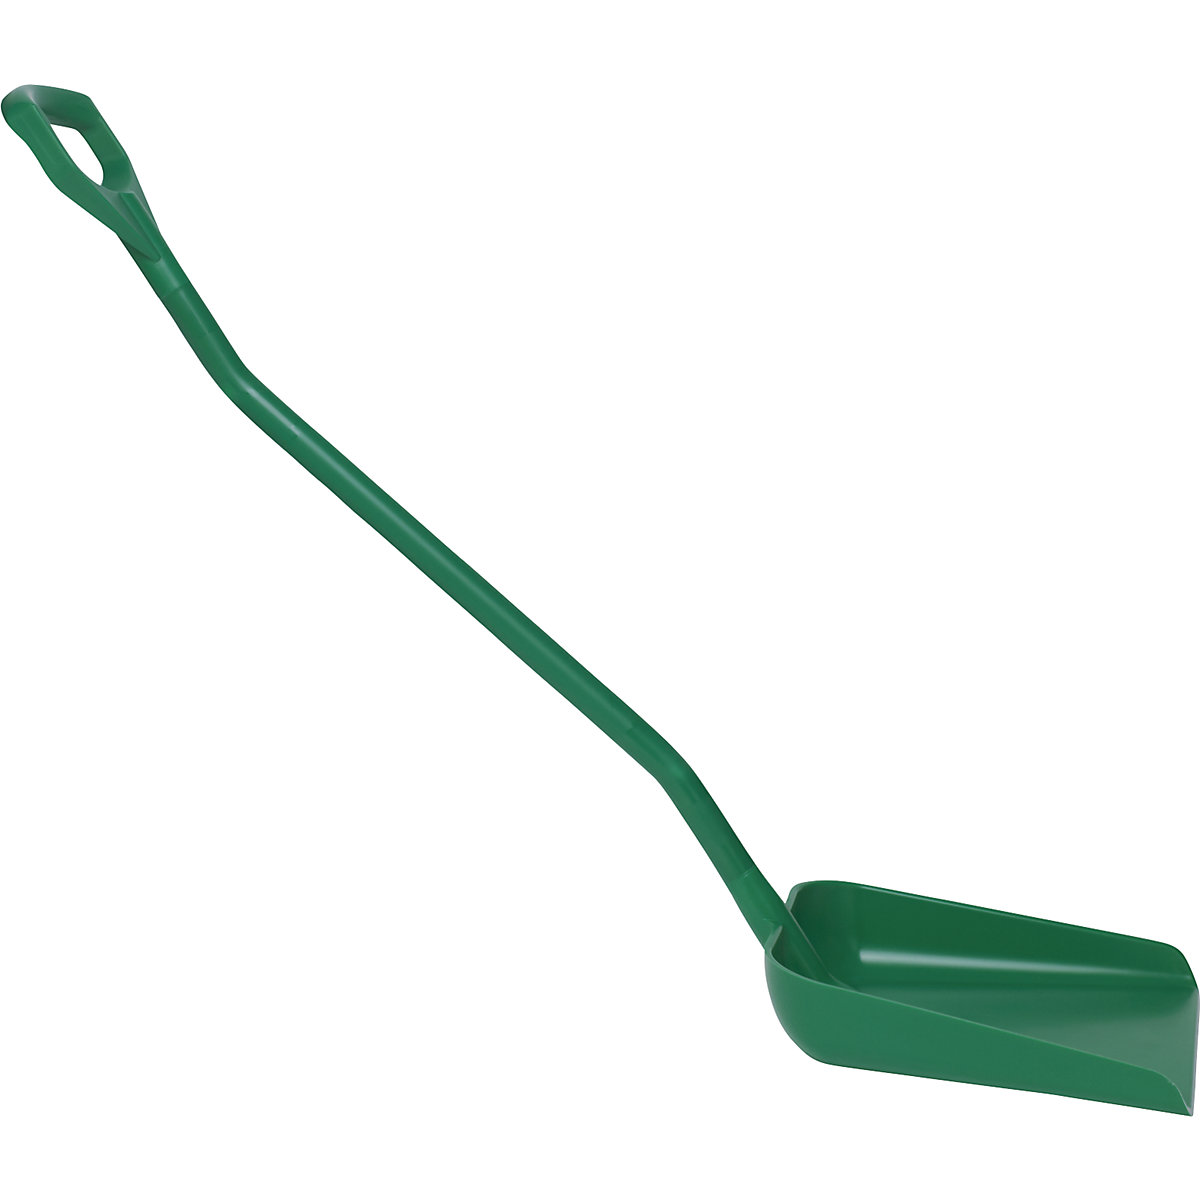 Vikan Schaufel, ergonomisch und lebensmittelecht, Gesamtlänge 1310 mm, grün